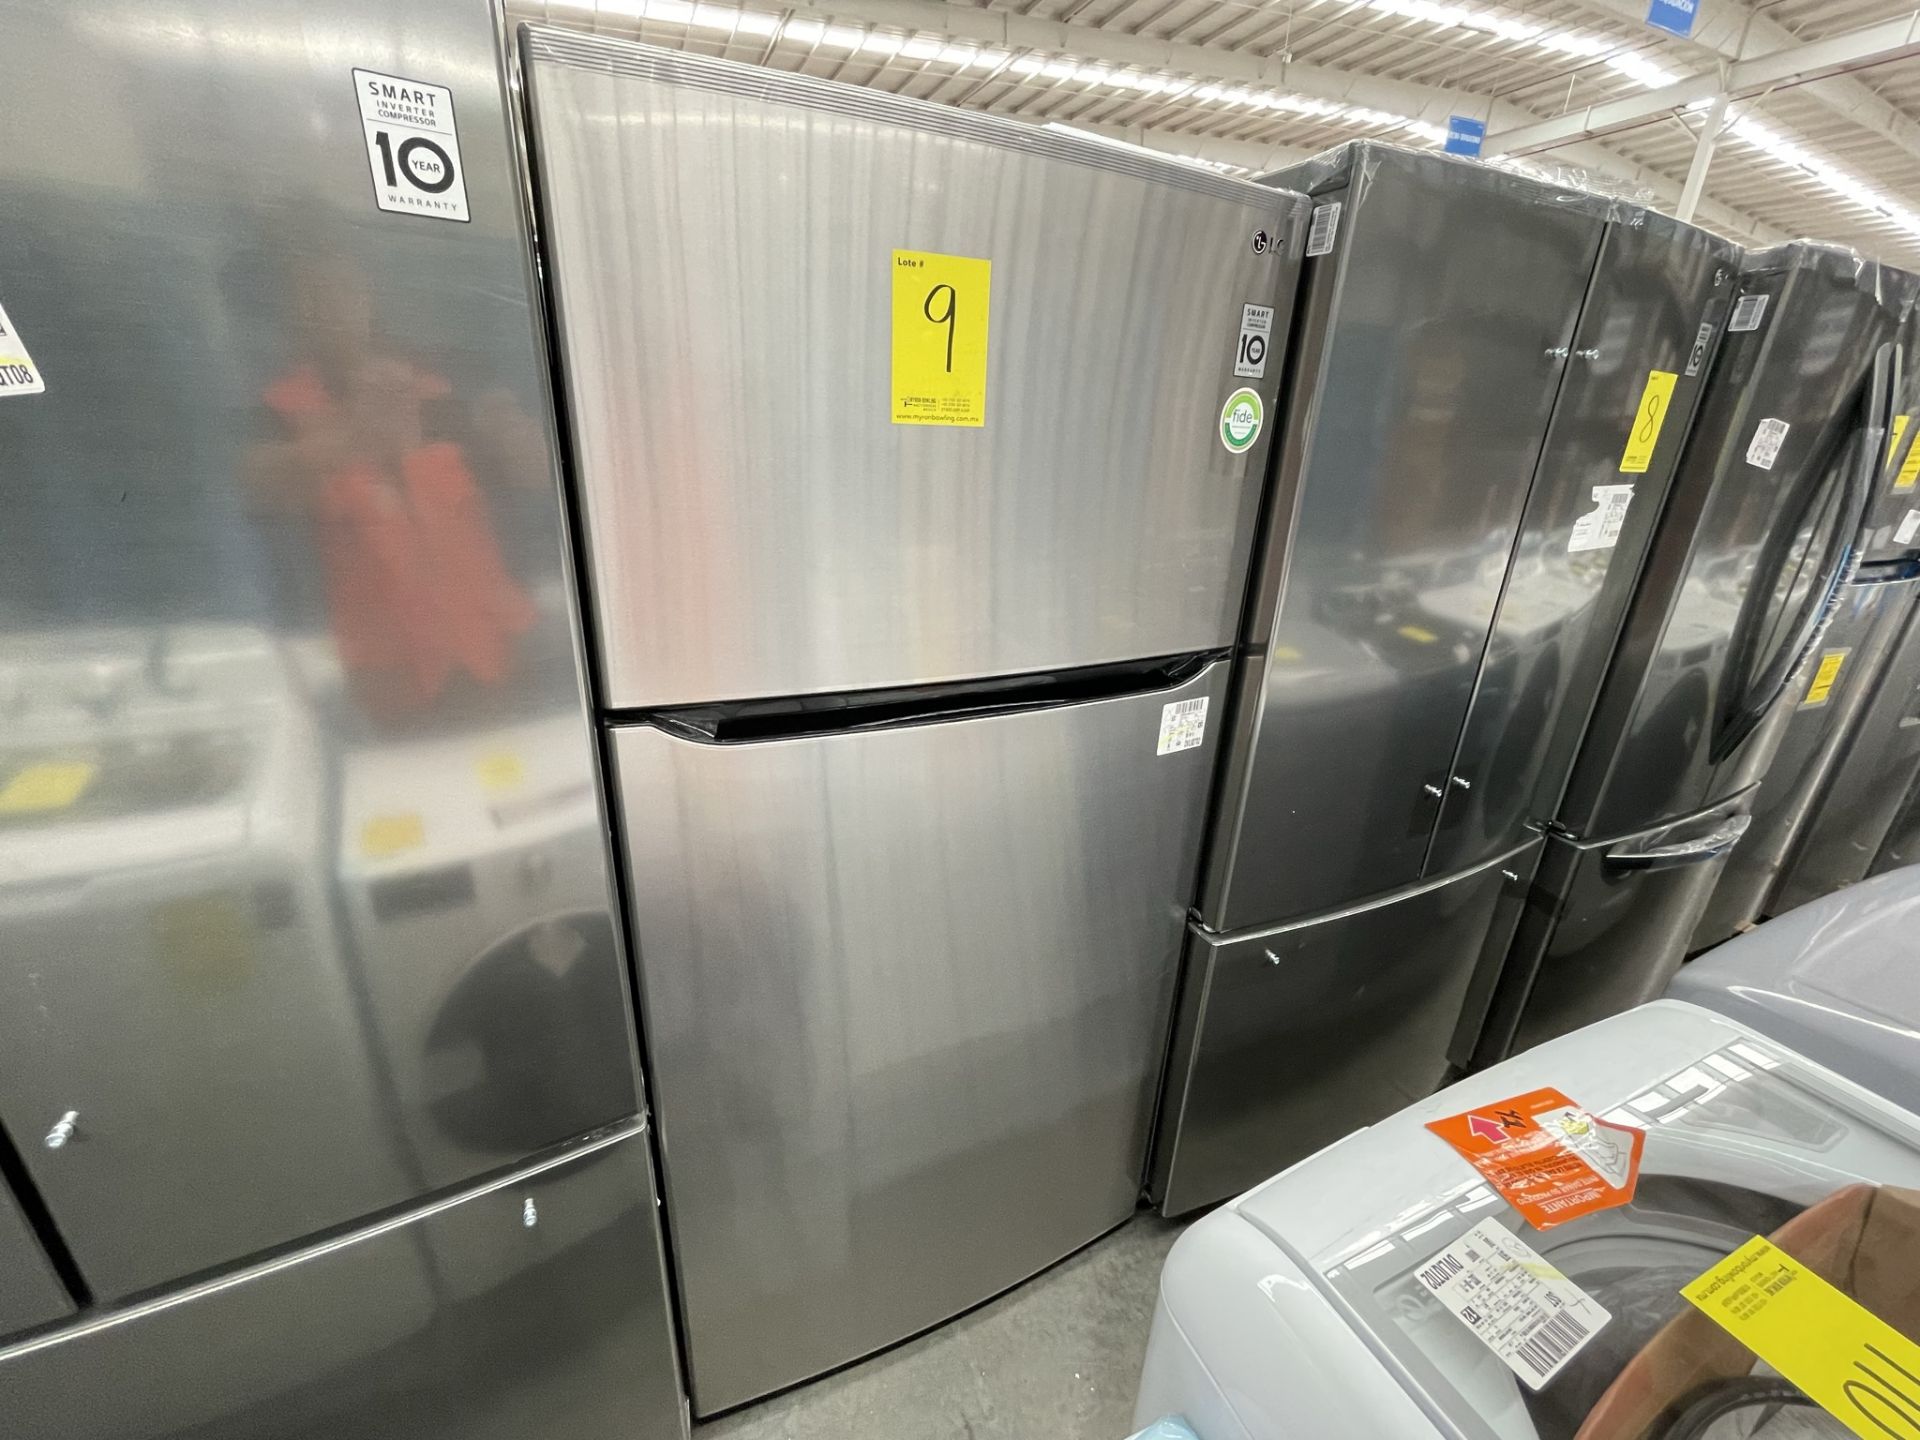 (EQUIPO NUEVO) 1 Refrigerador Marca LG, Modelo GT24BS, Serie V1C601, Color GRIS, LB-619781; (Nuevo, - Image 3 of 10